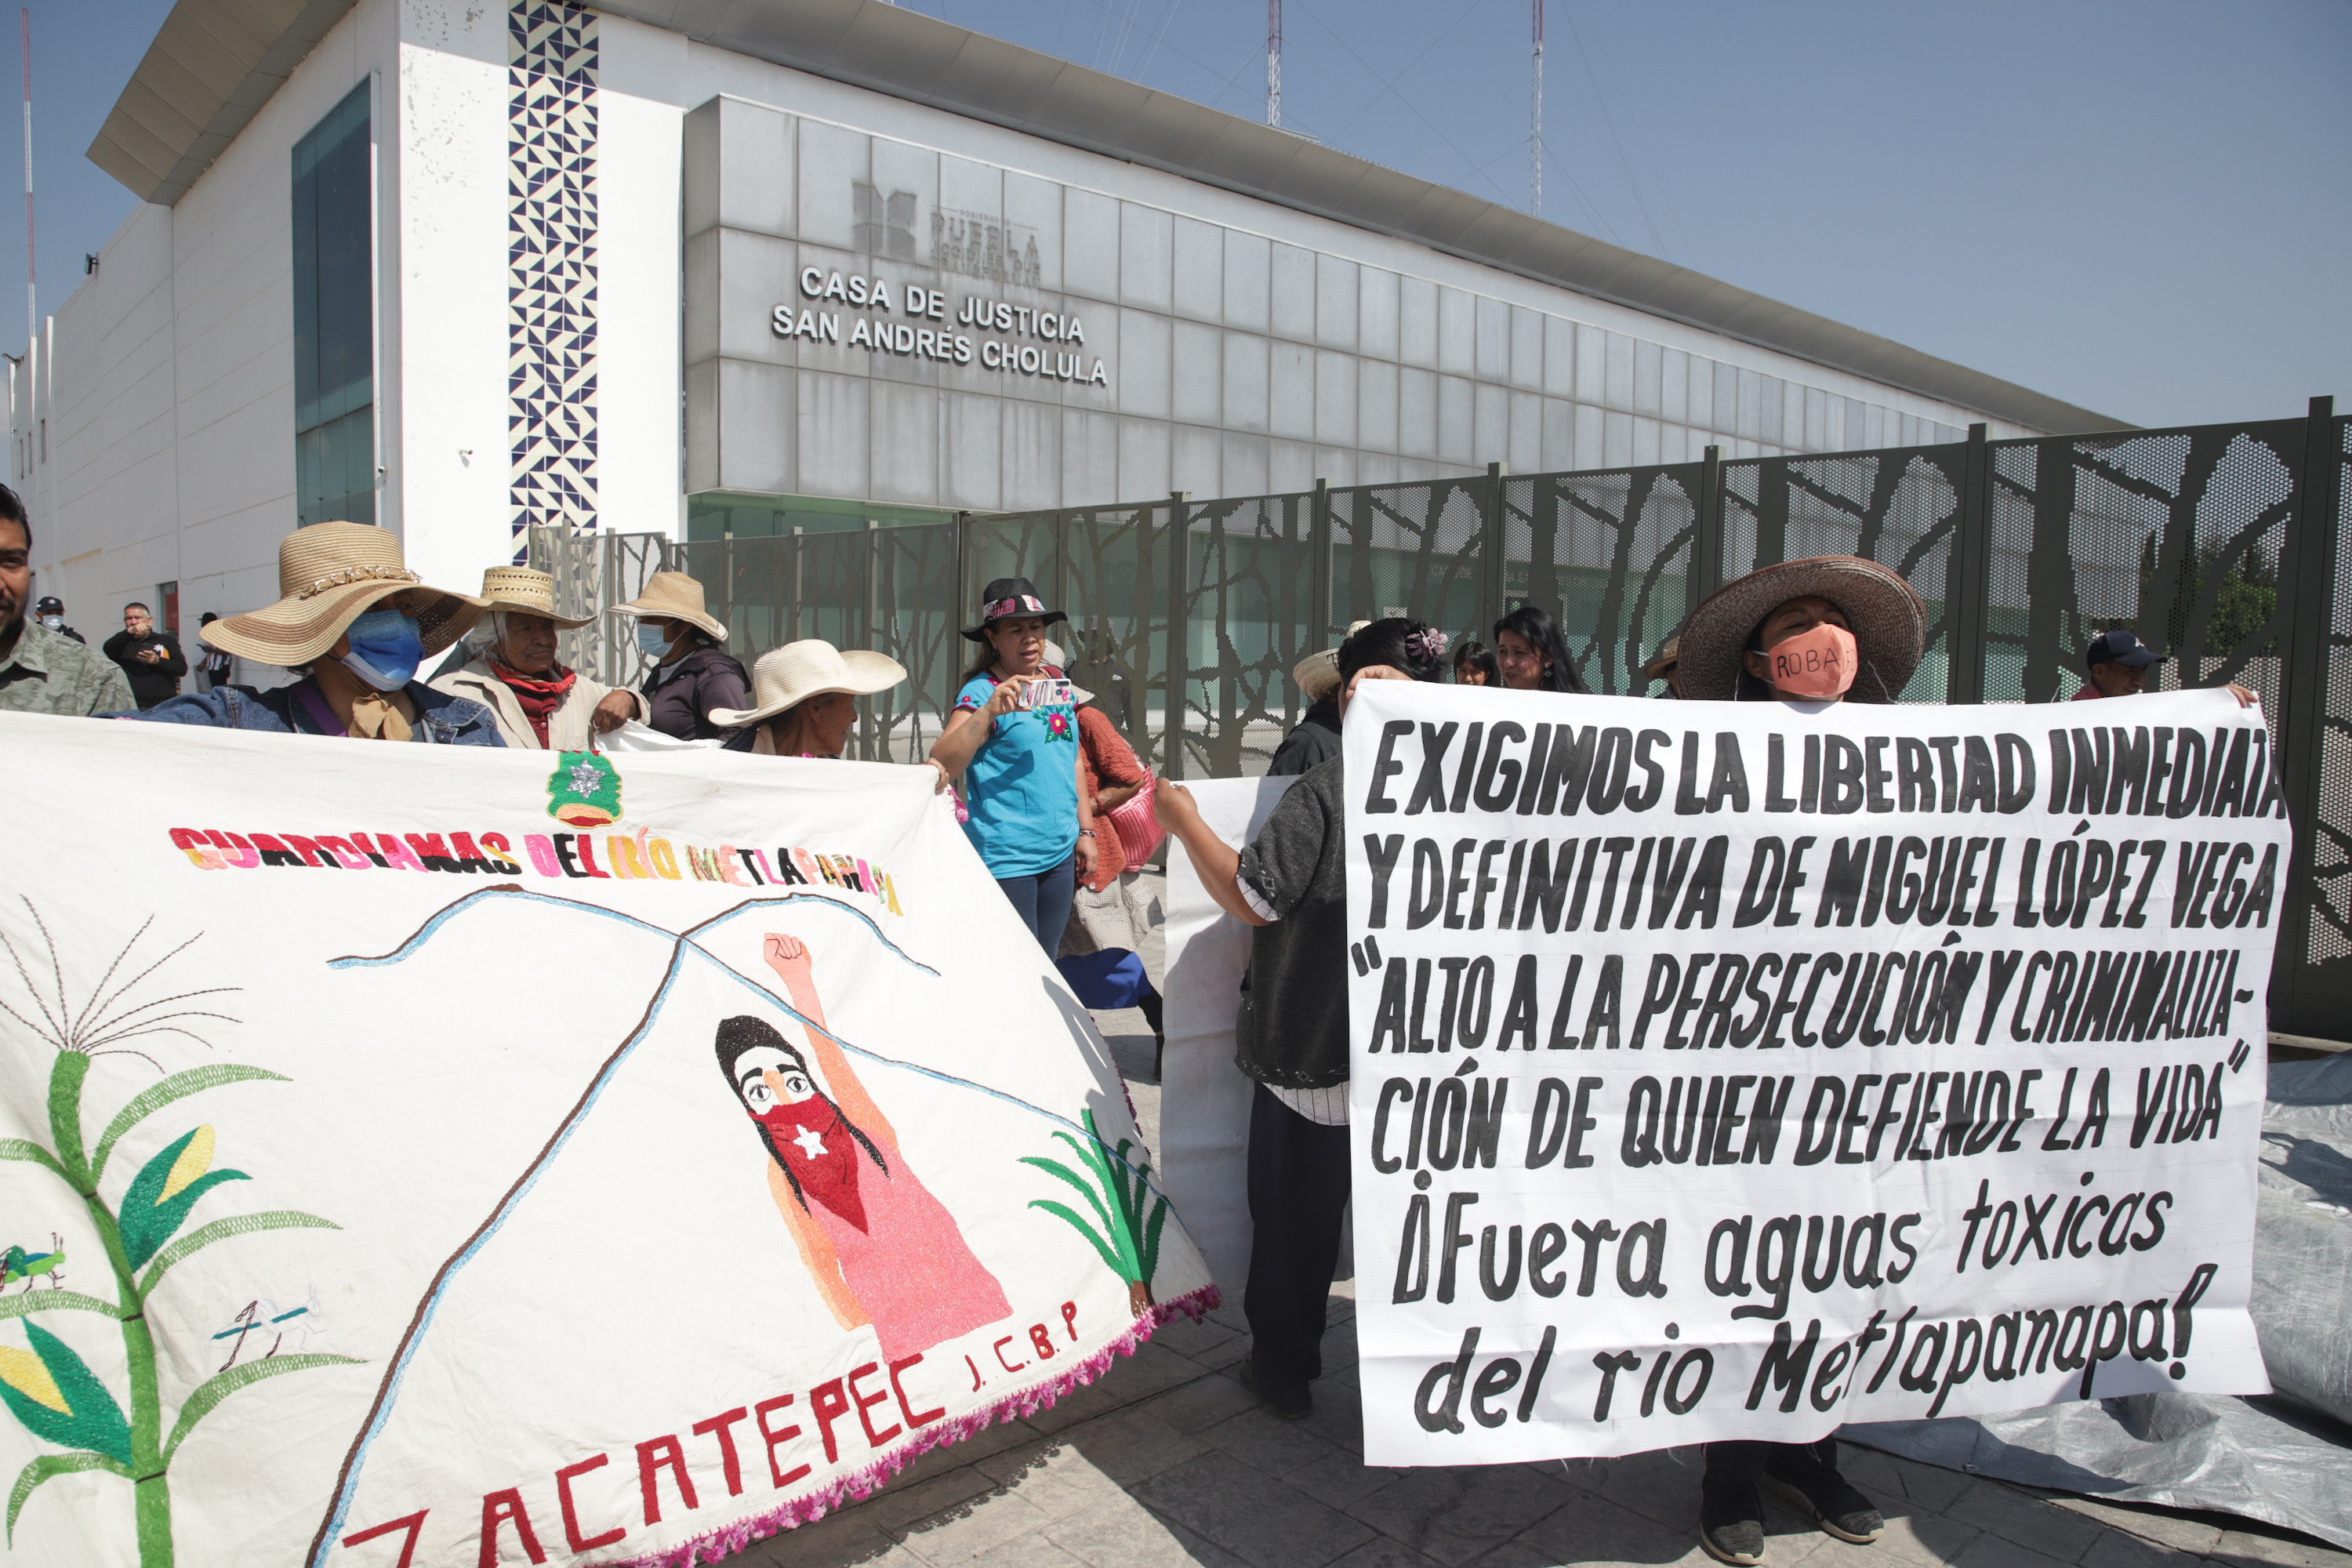 VIDEO Se concentran en Casa de Justicia para apoyar a Miguel López Vega